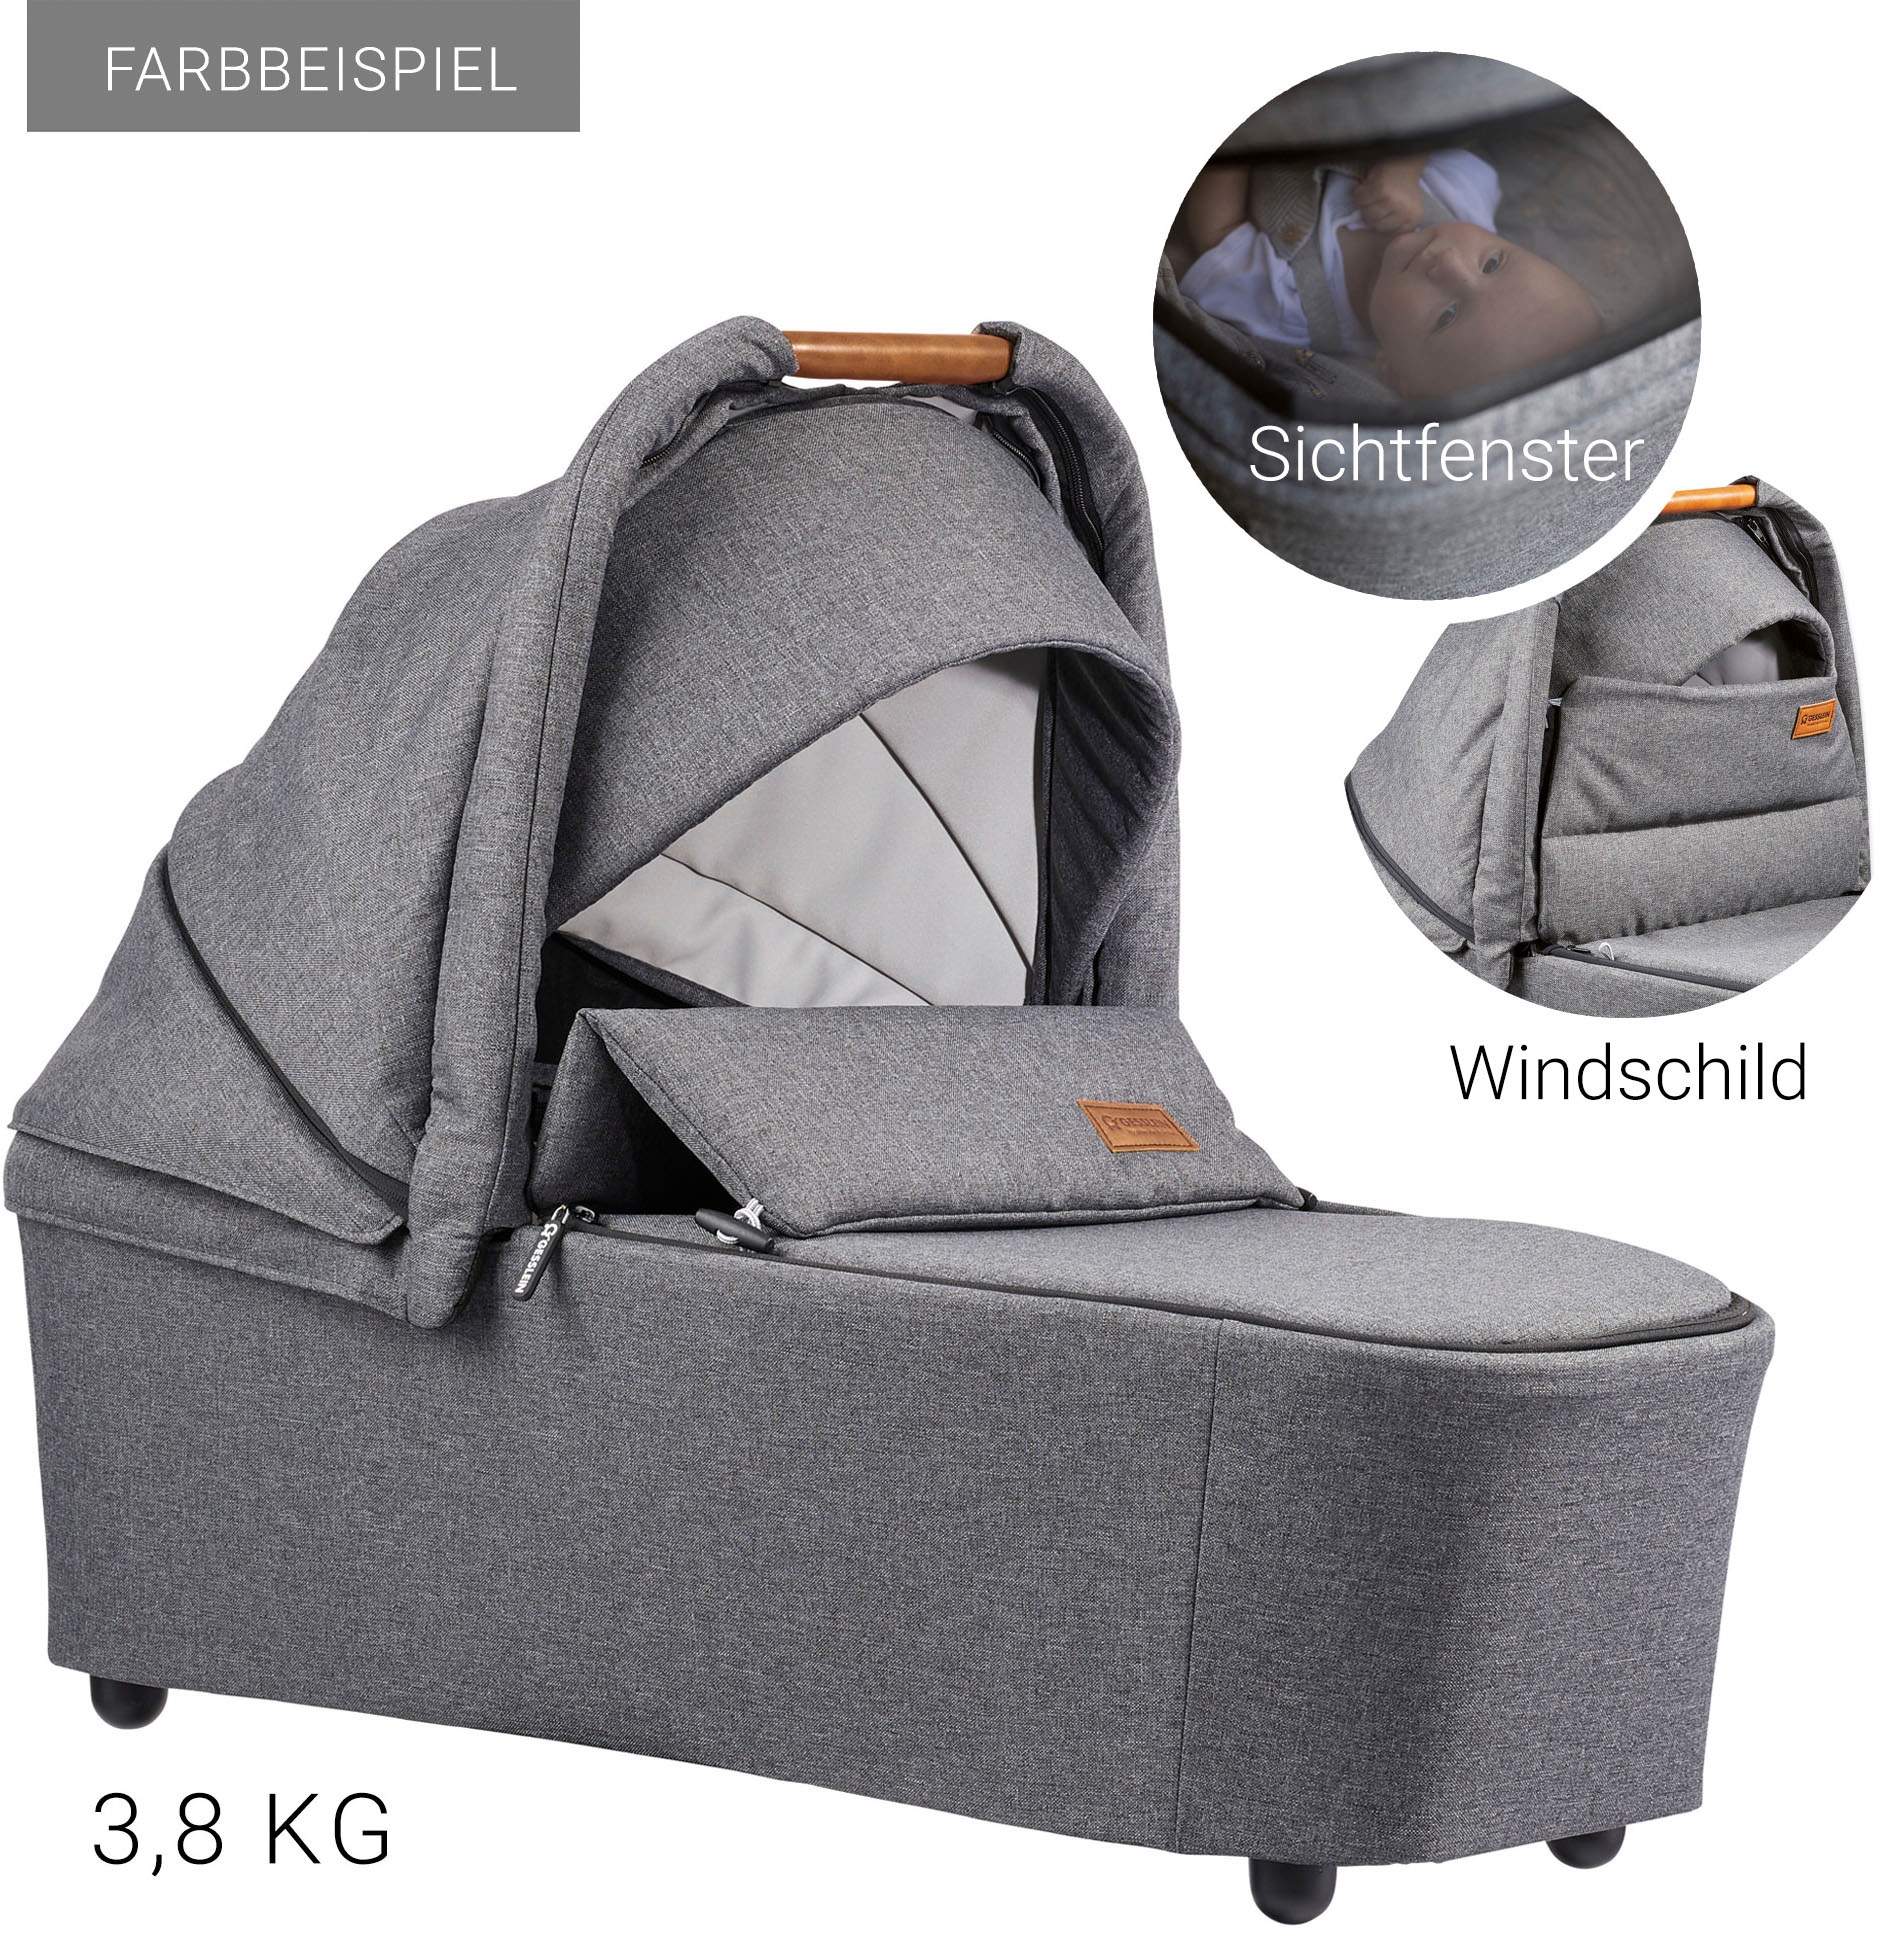 Gesslein Kombi-Kinderwagen »FX4 Soft+ mit Aufsatz Swing schwarz, mango«, mit Babywanne C3 und Babyschalenadapter